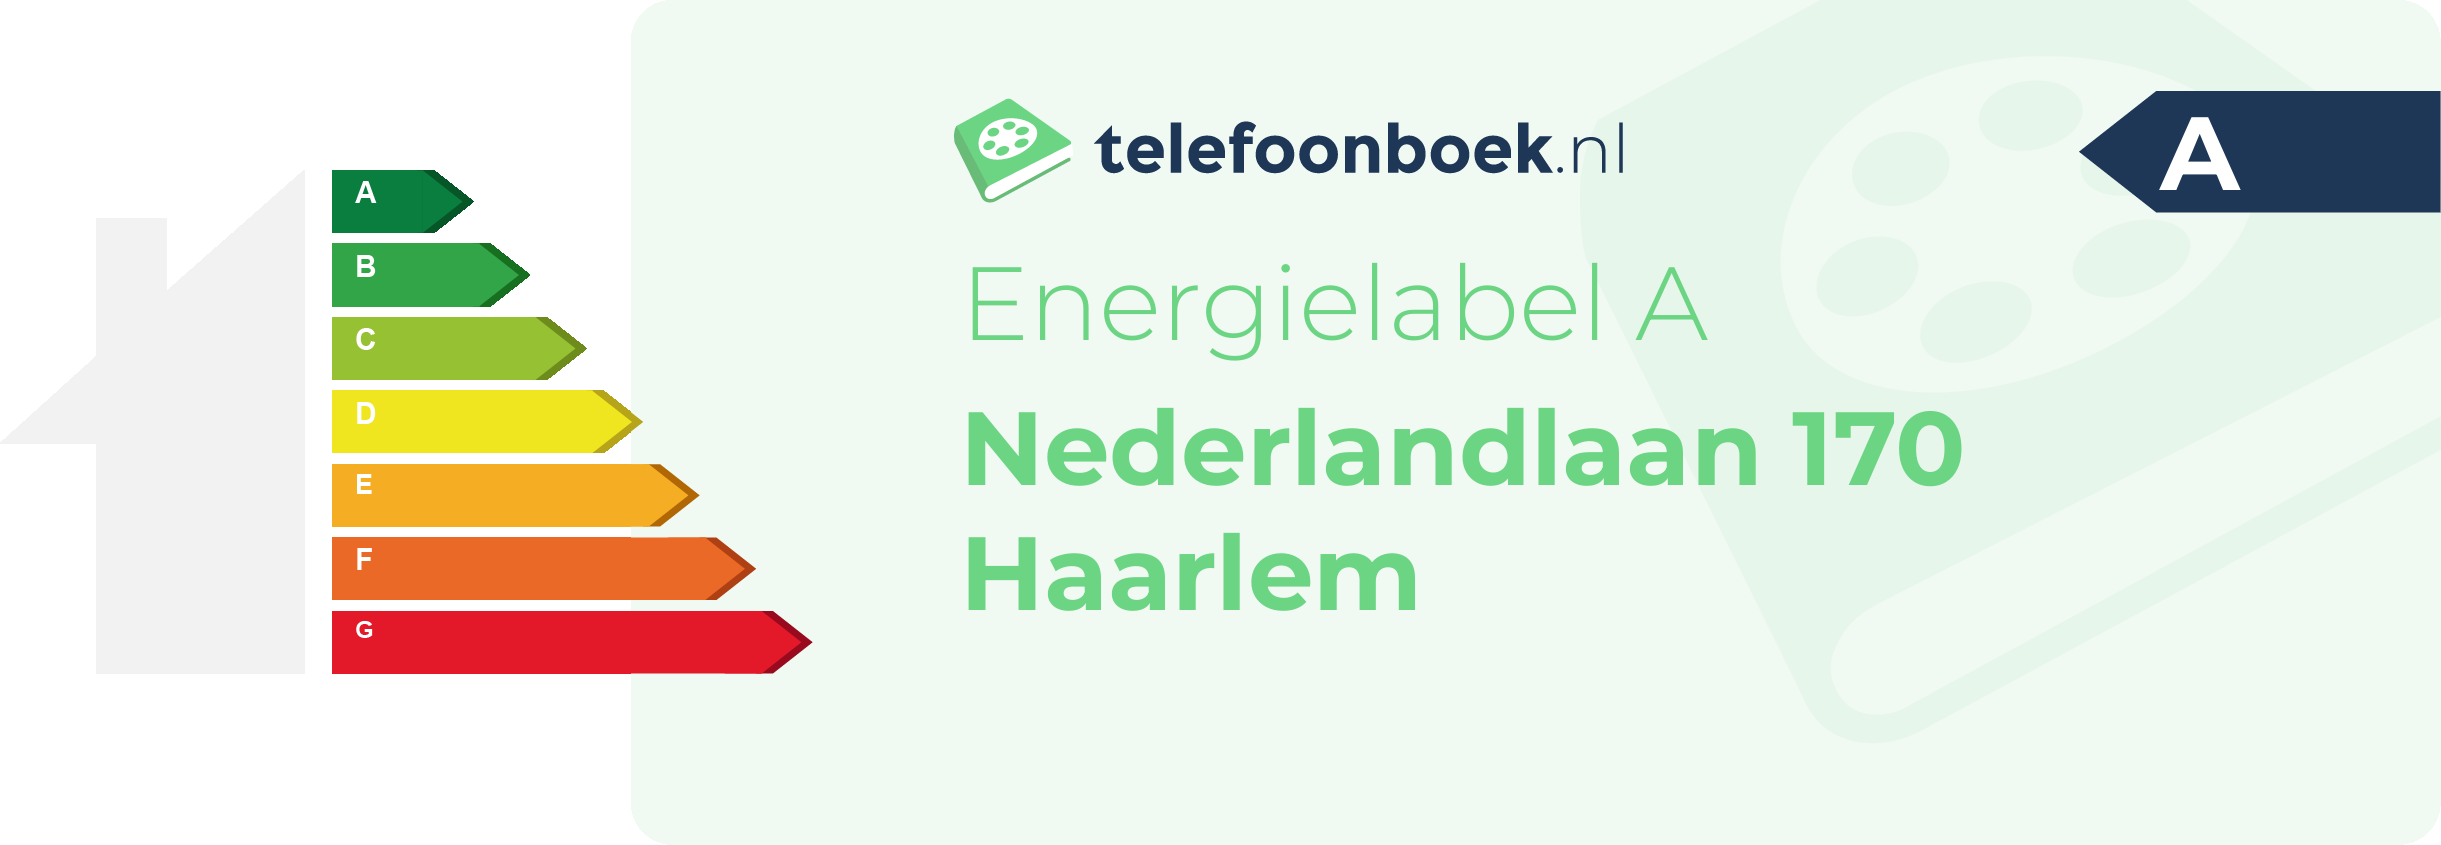 Energielabel Nederlandlaan 170 Haarlem